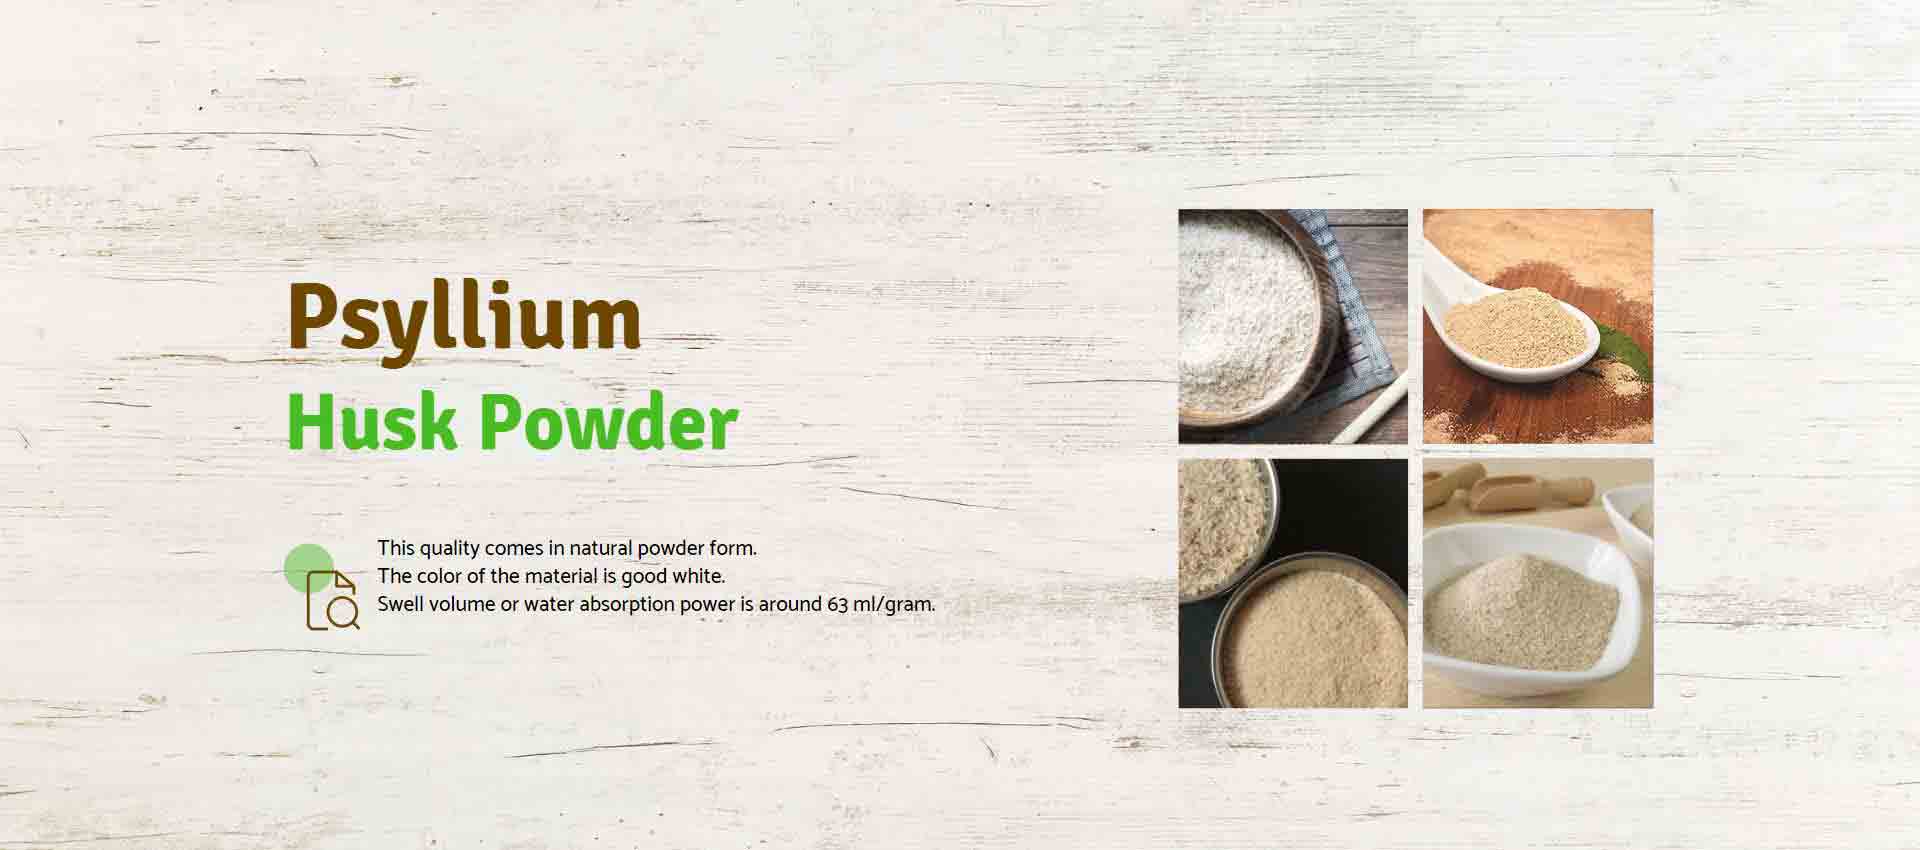 Psyllium Husk Powder Manufacturers in Kolkata